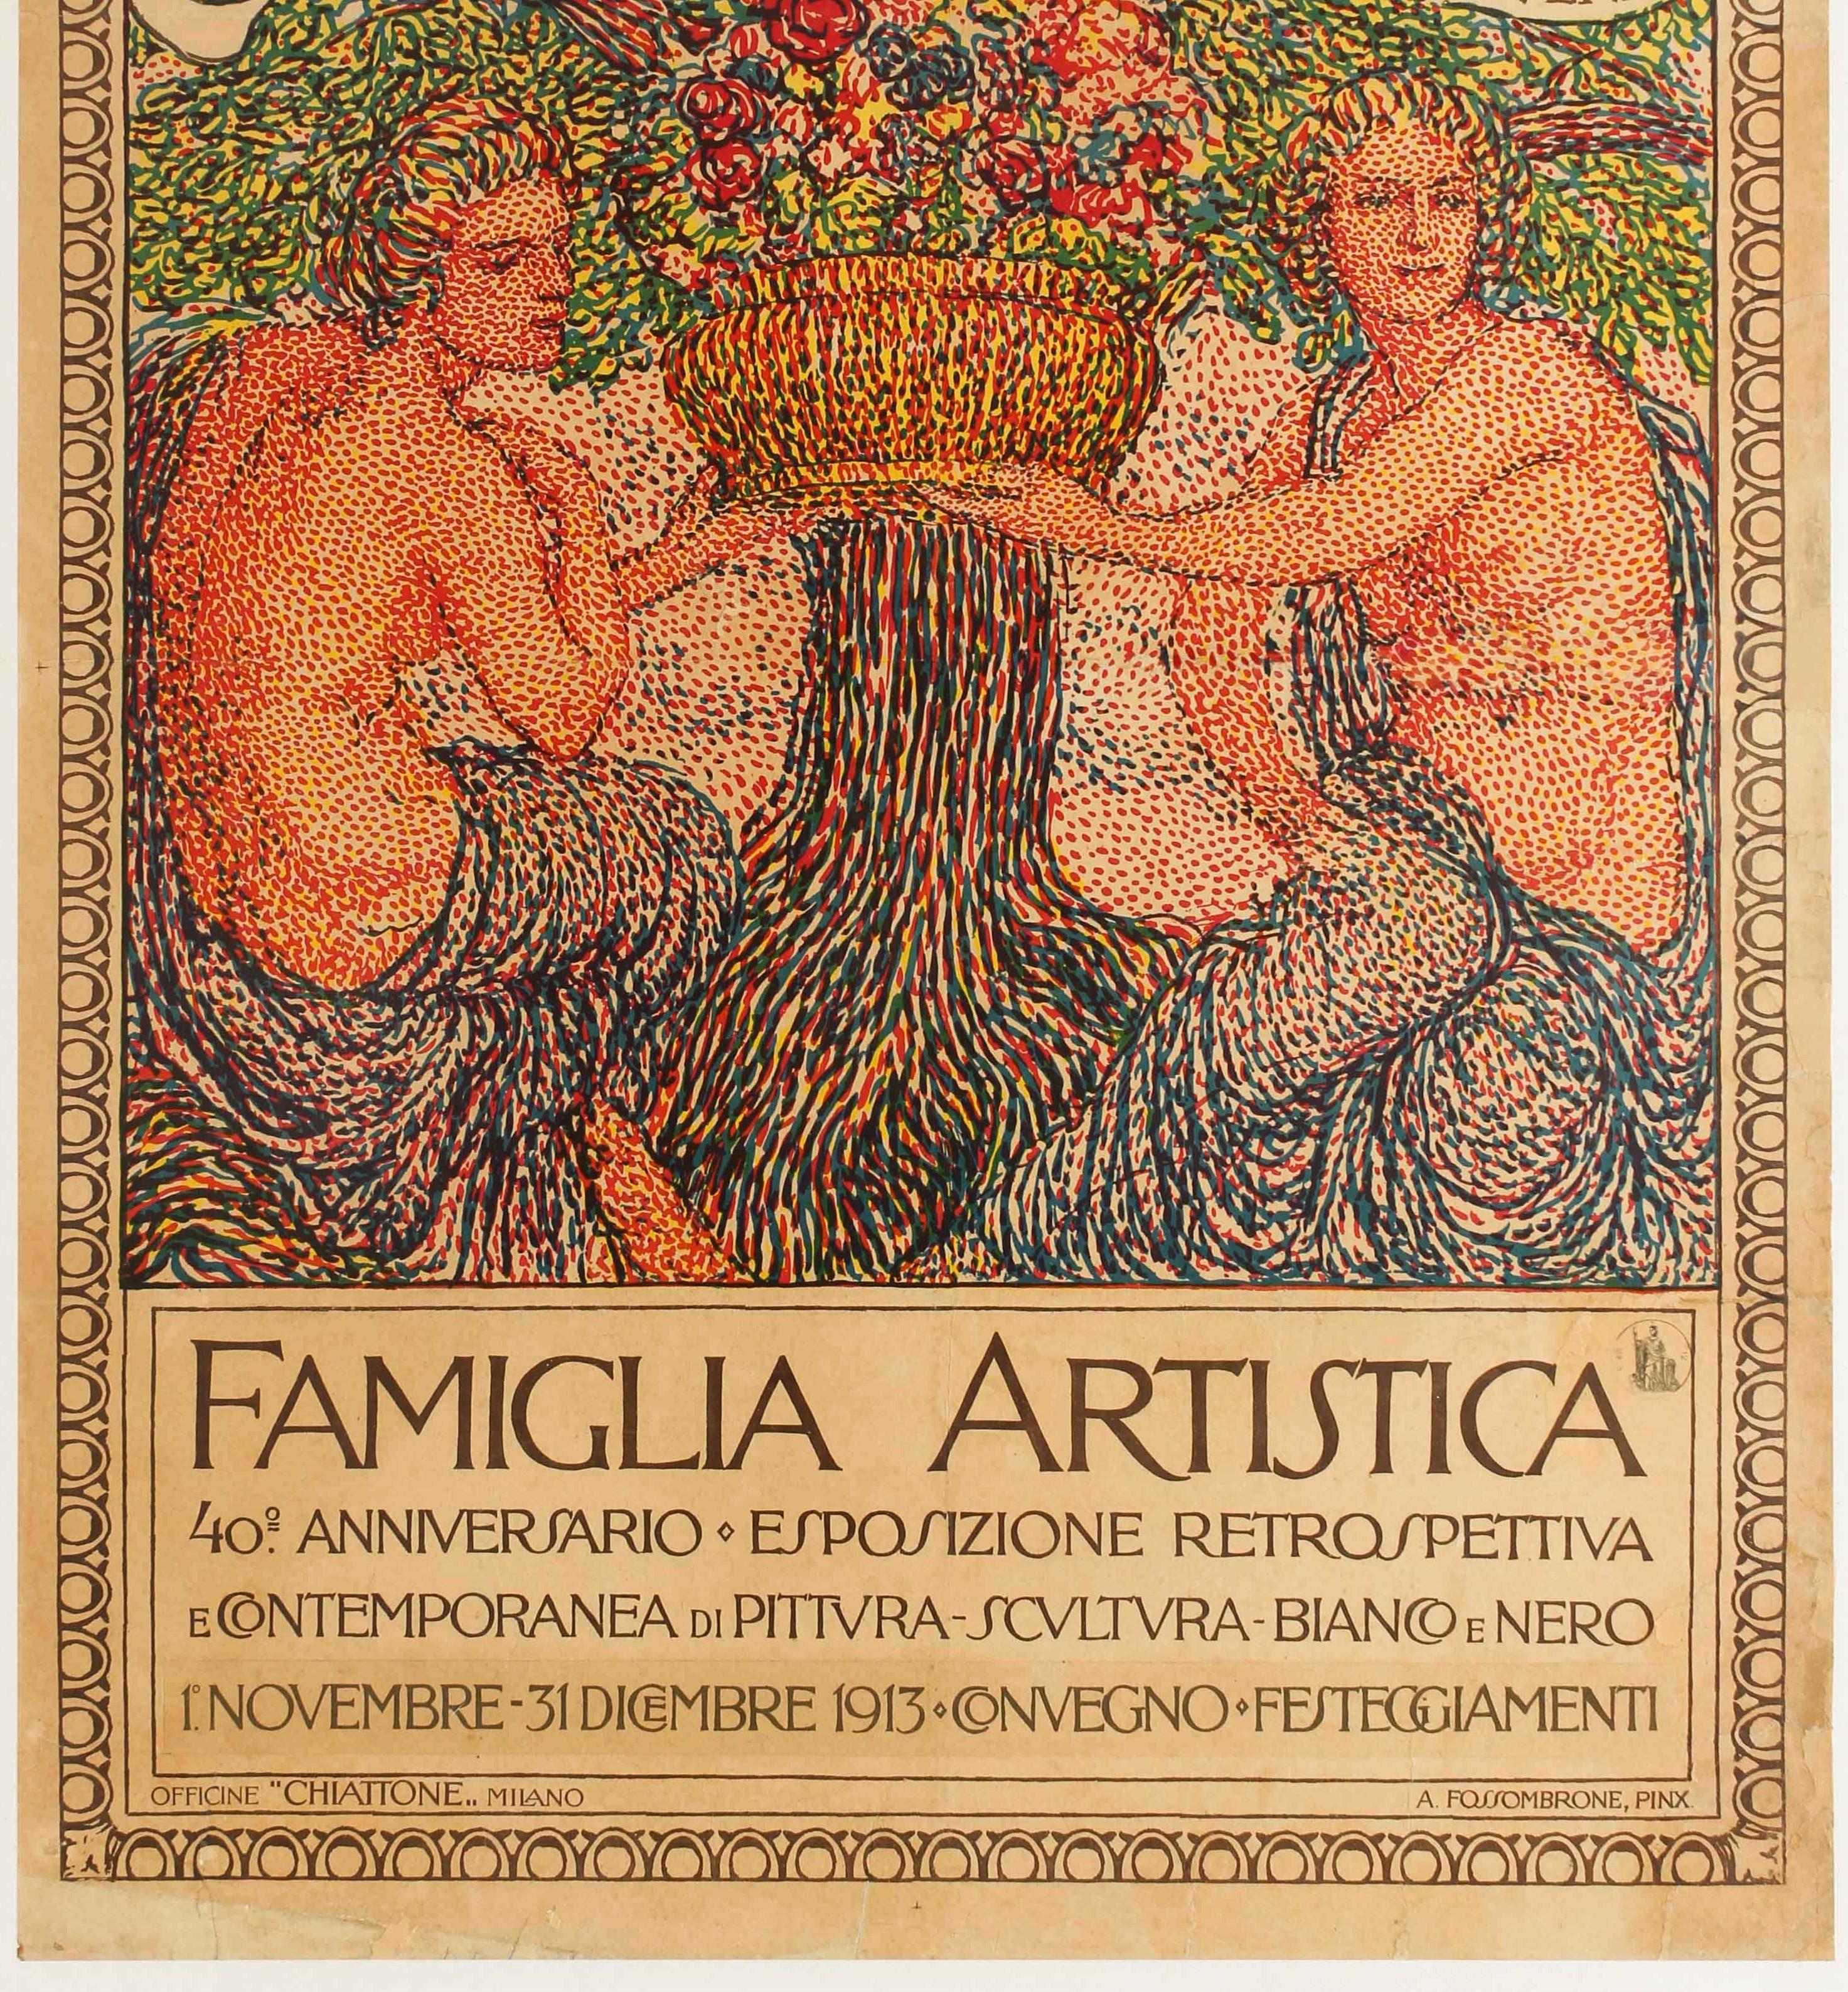 Italian Antique Art Exhibition Poster Famiglia Artistica Artistic Family Milan 1873 1913 For Sale